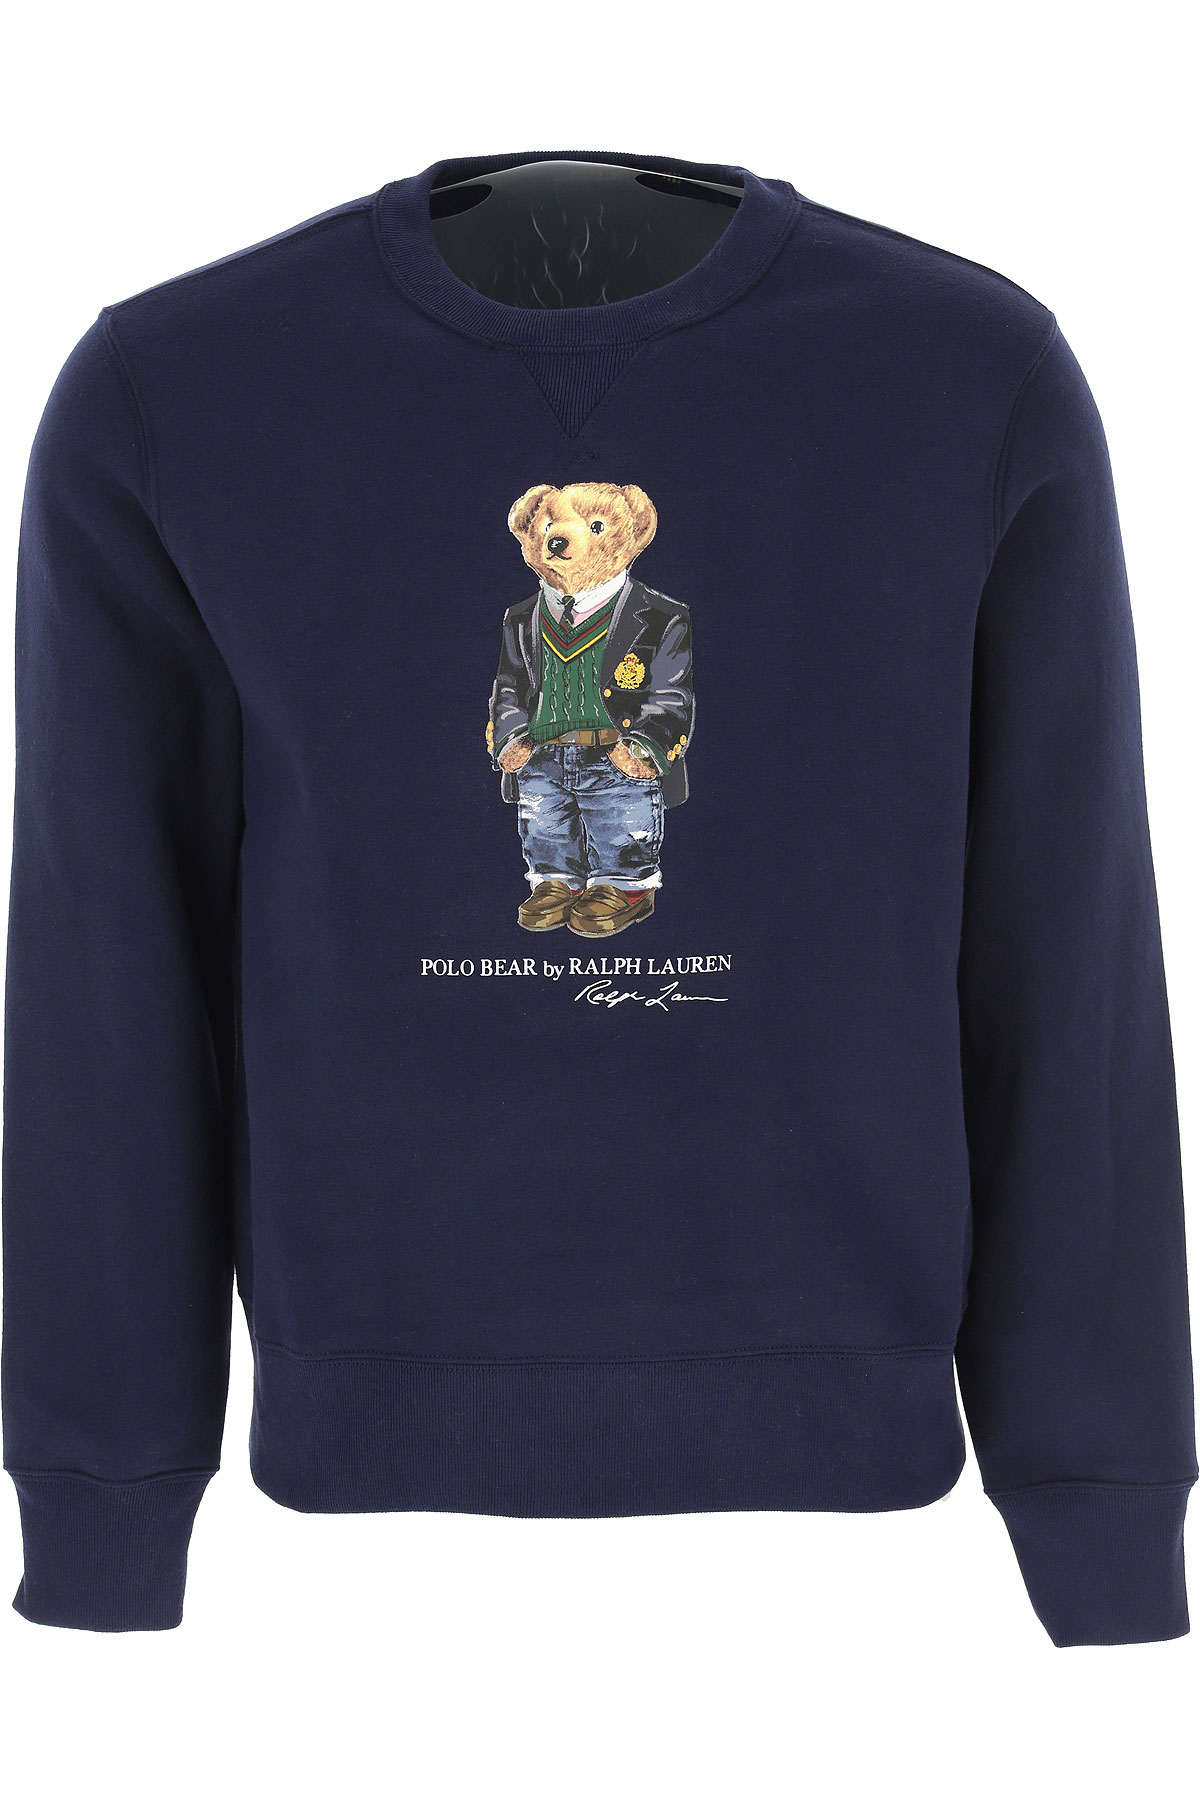 Ralph Lauren Sweatshirt für Herren, Kapuzenpulli, Hoodie, Sweats, Marineblau, Baumwolle, 2017, L M S XL